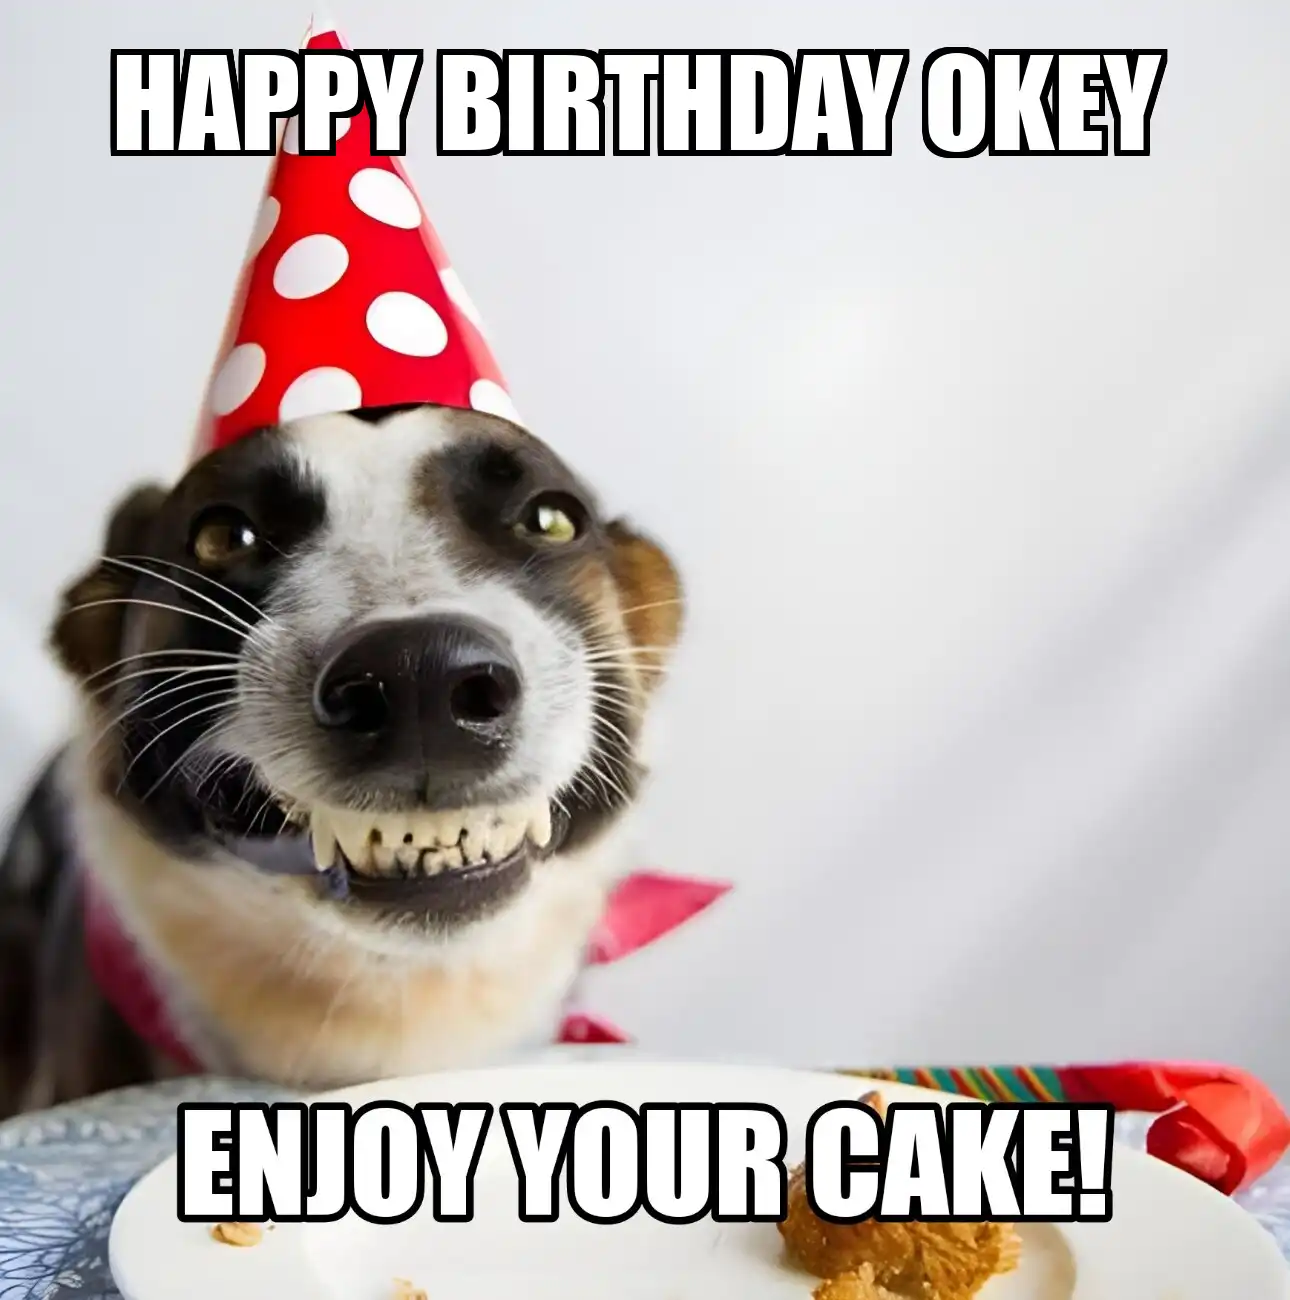 Happy Birthday Okey Enjoy Your Cake Dog Meme